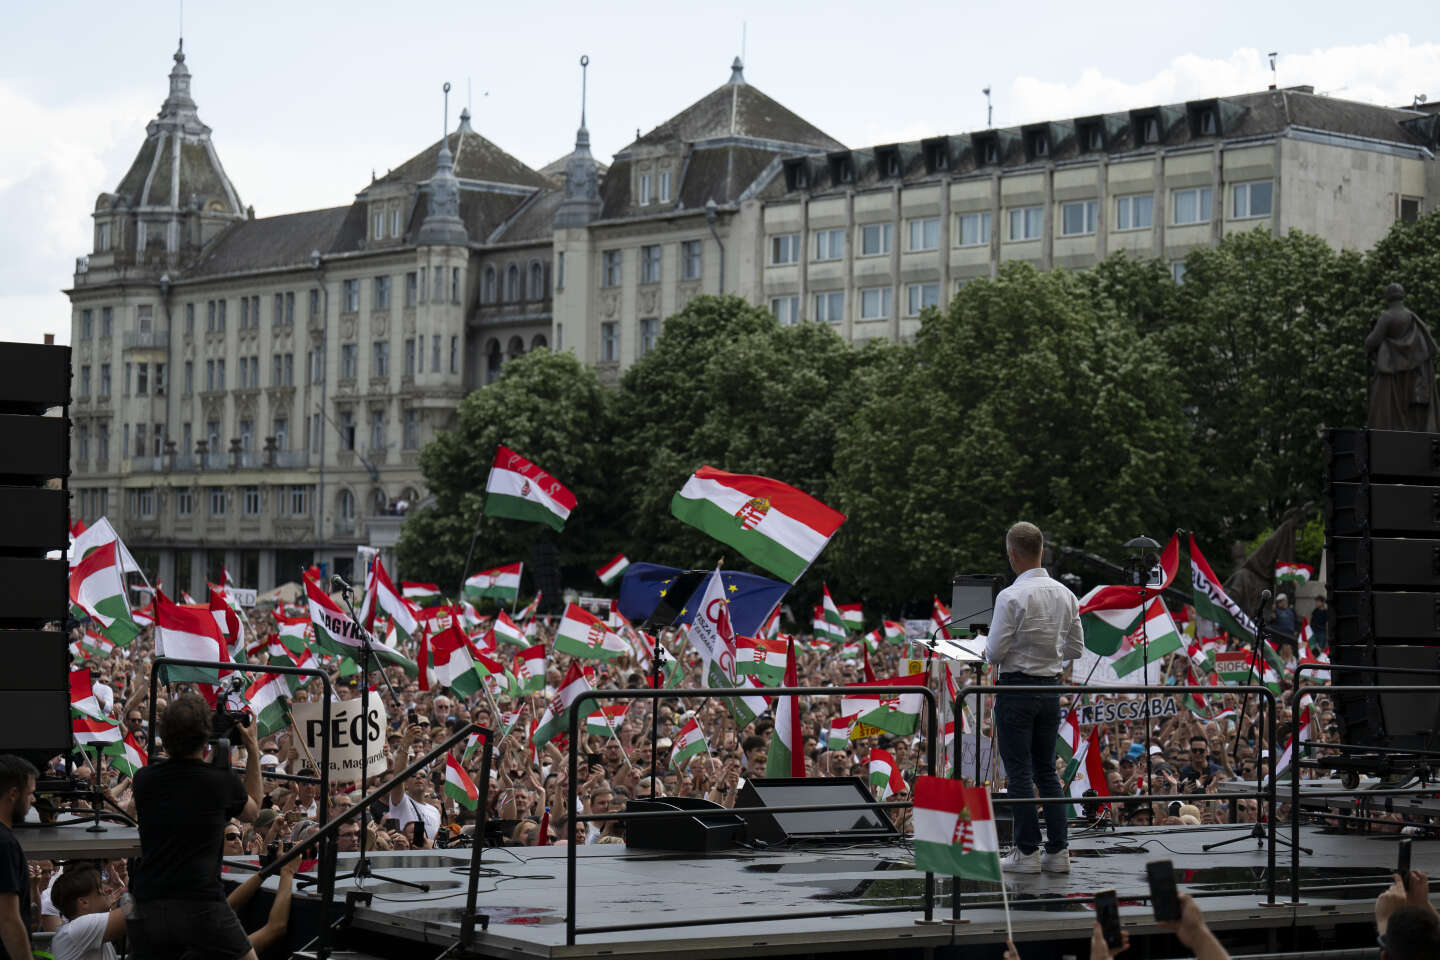 In Ungheria gli oppositori di Viktor Orban hanno manifestato attorno a Peter Magyar